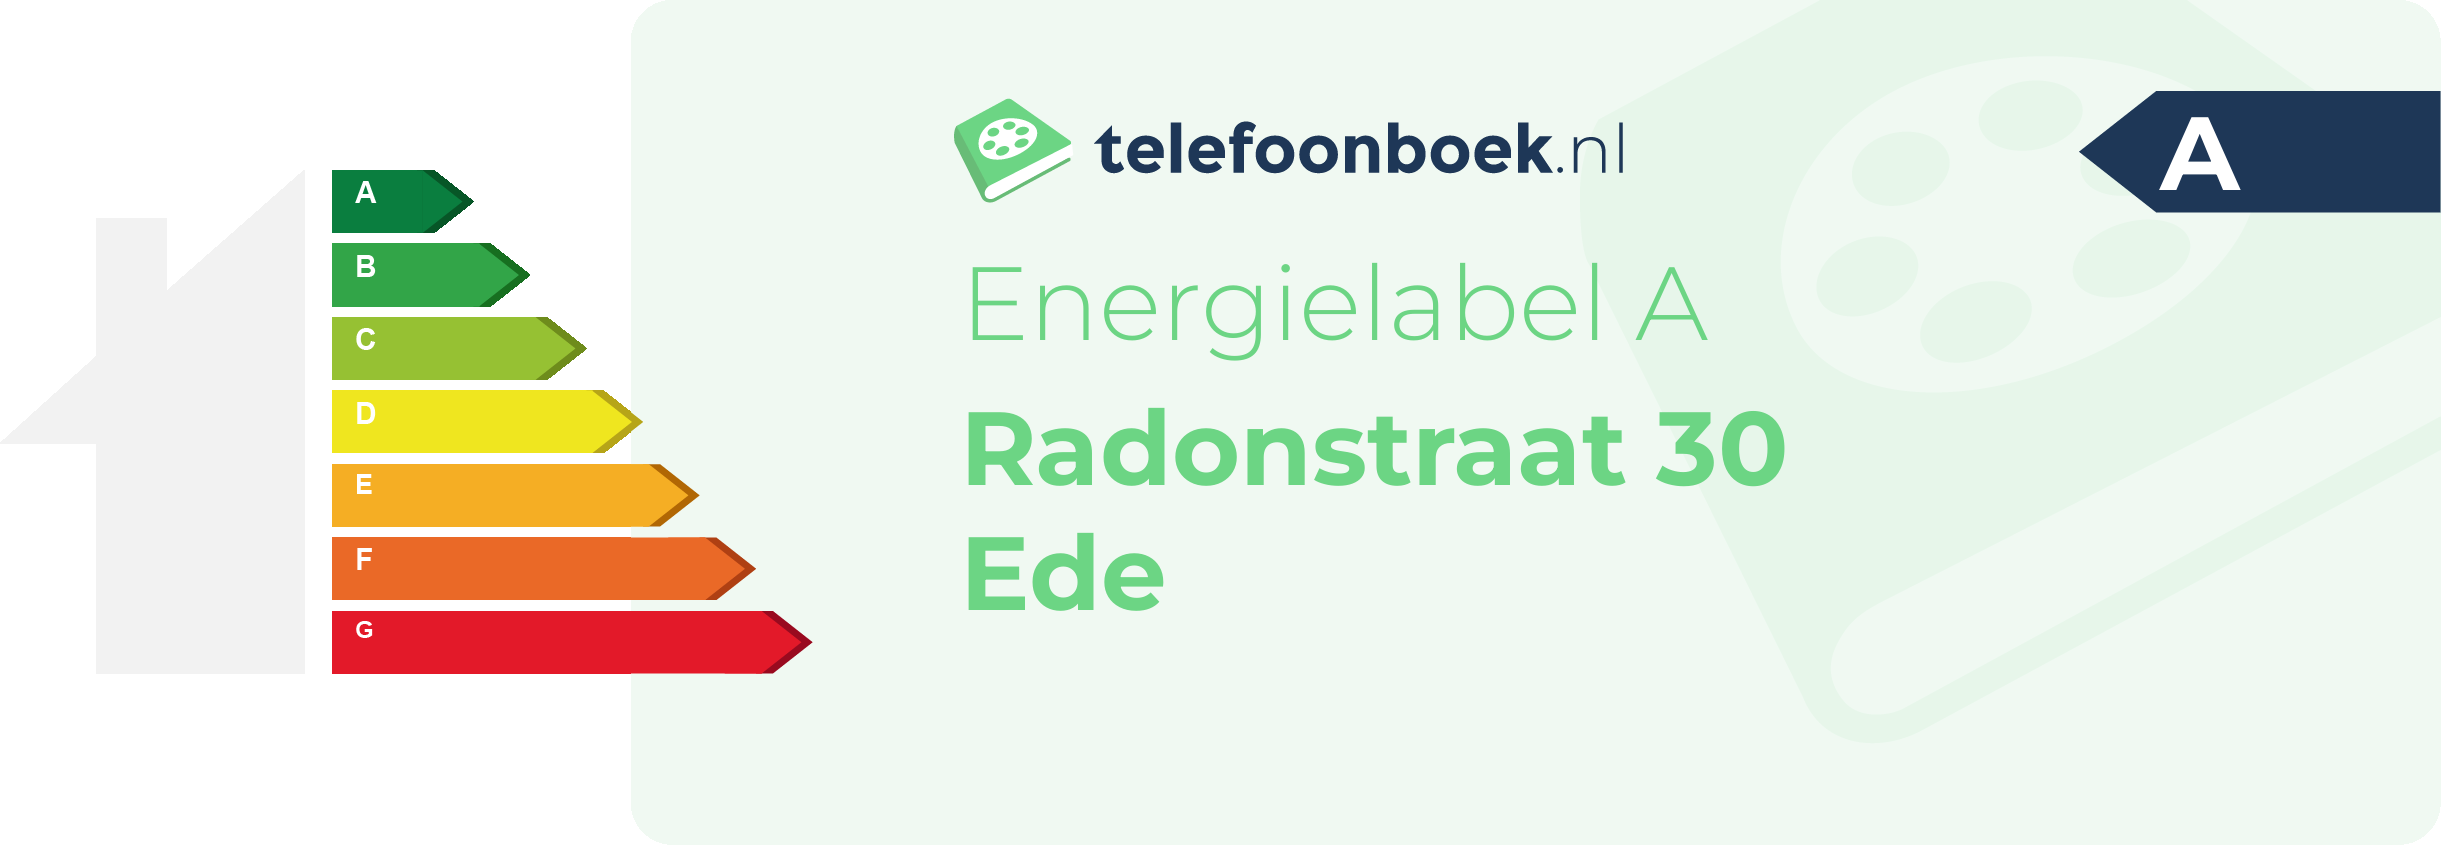 Energielabel Radonstraat 30 Ede